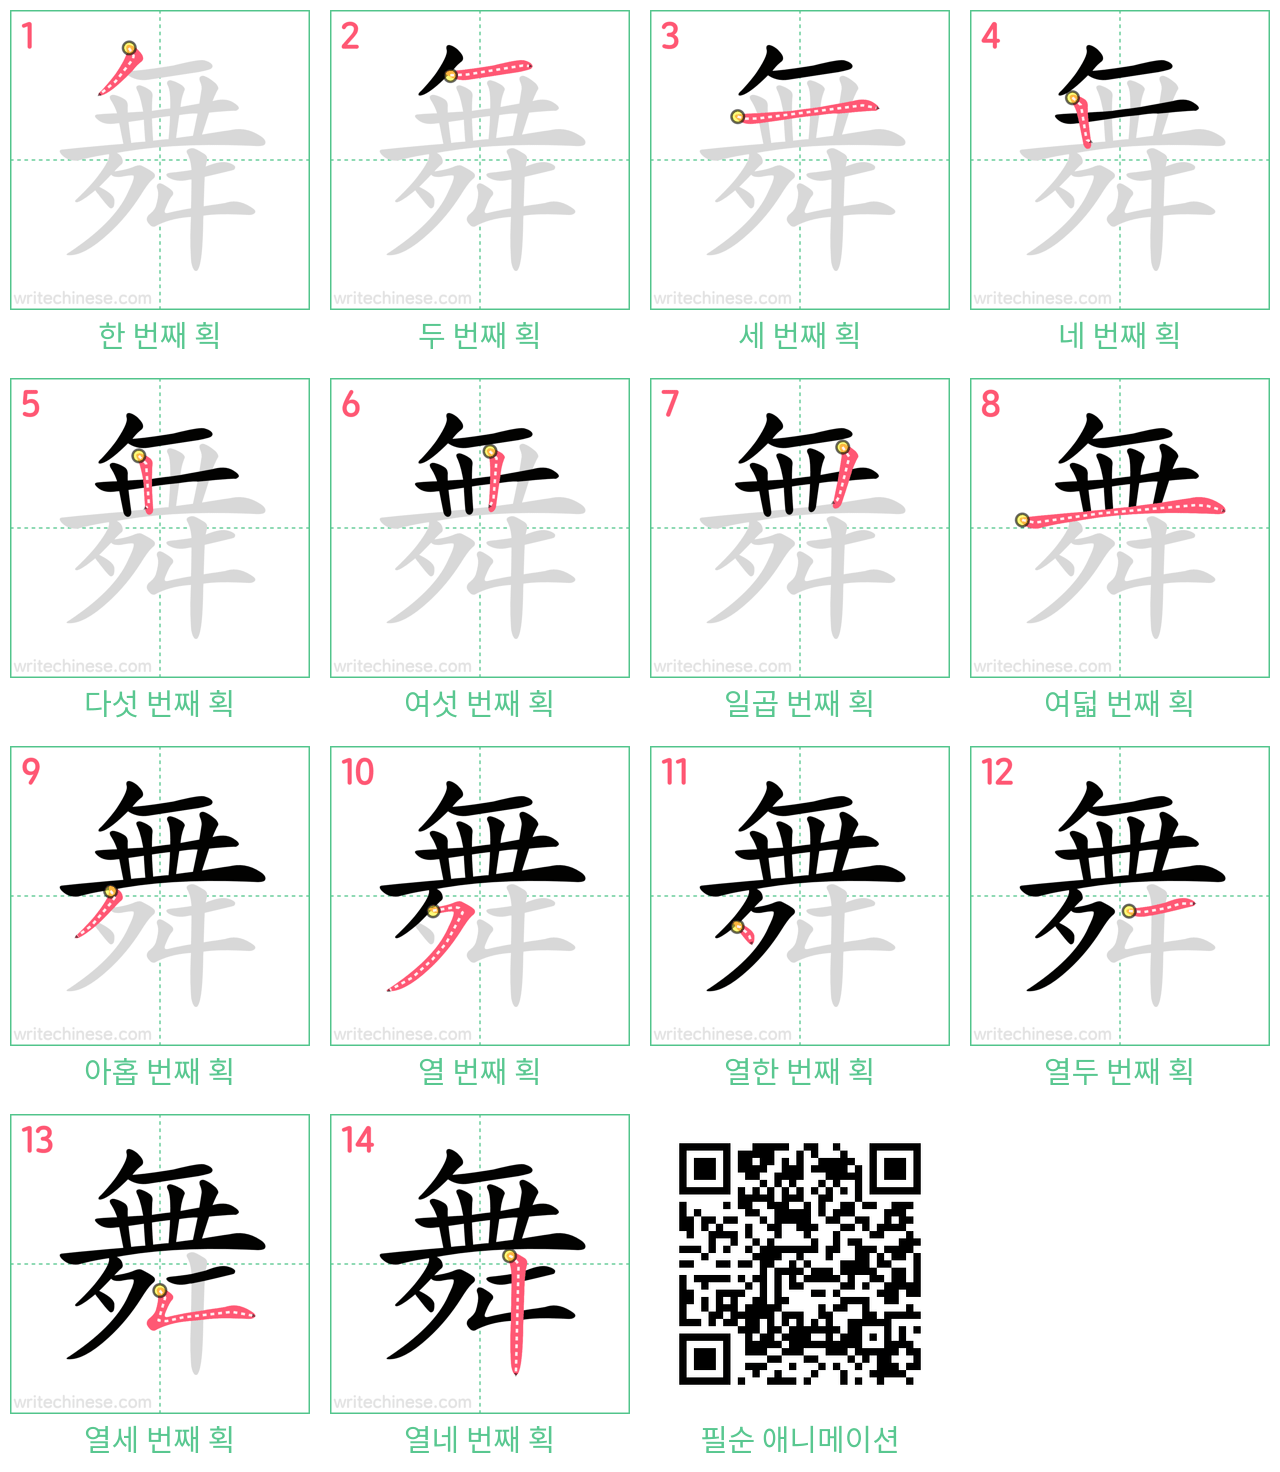 舞 step-by-step stroke order diagrams